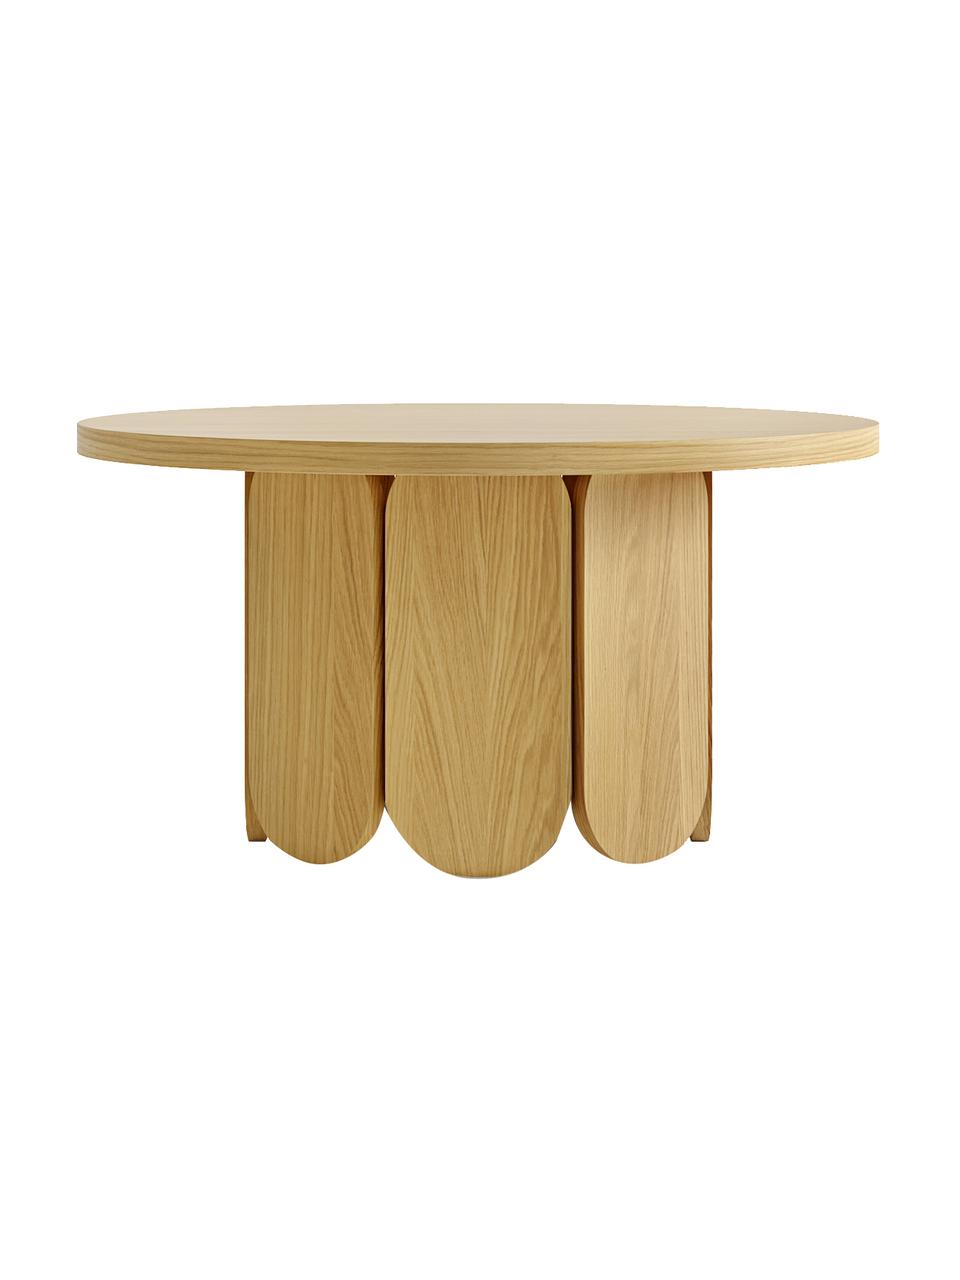 Table basse ronde plaquée chêne Soft, MDF (panneau en fibres de bois à densité moyenne) avec placage en bois de chêne, certifié FSC®, Bois de chêne, Ø 79 x haut. 41 cm